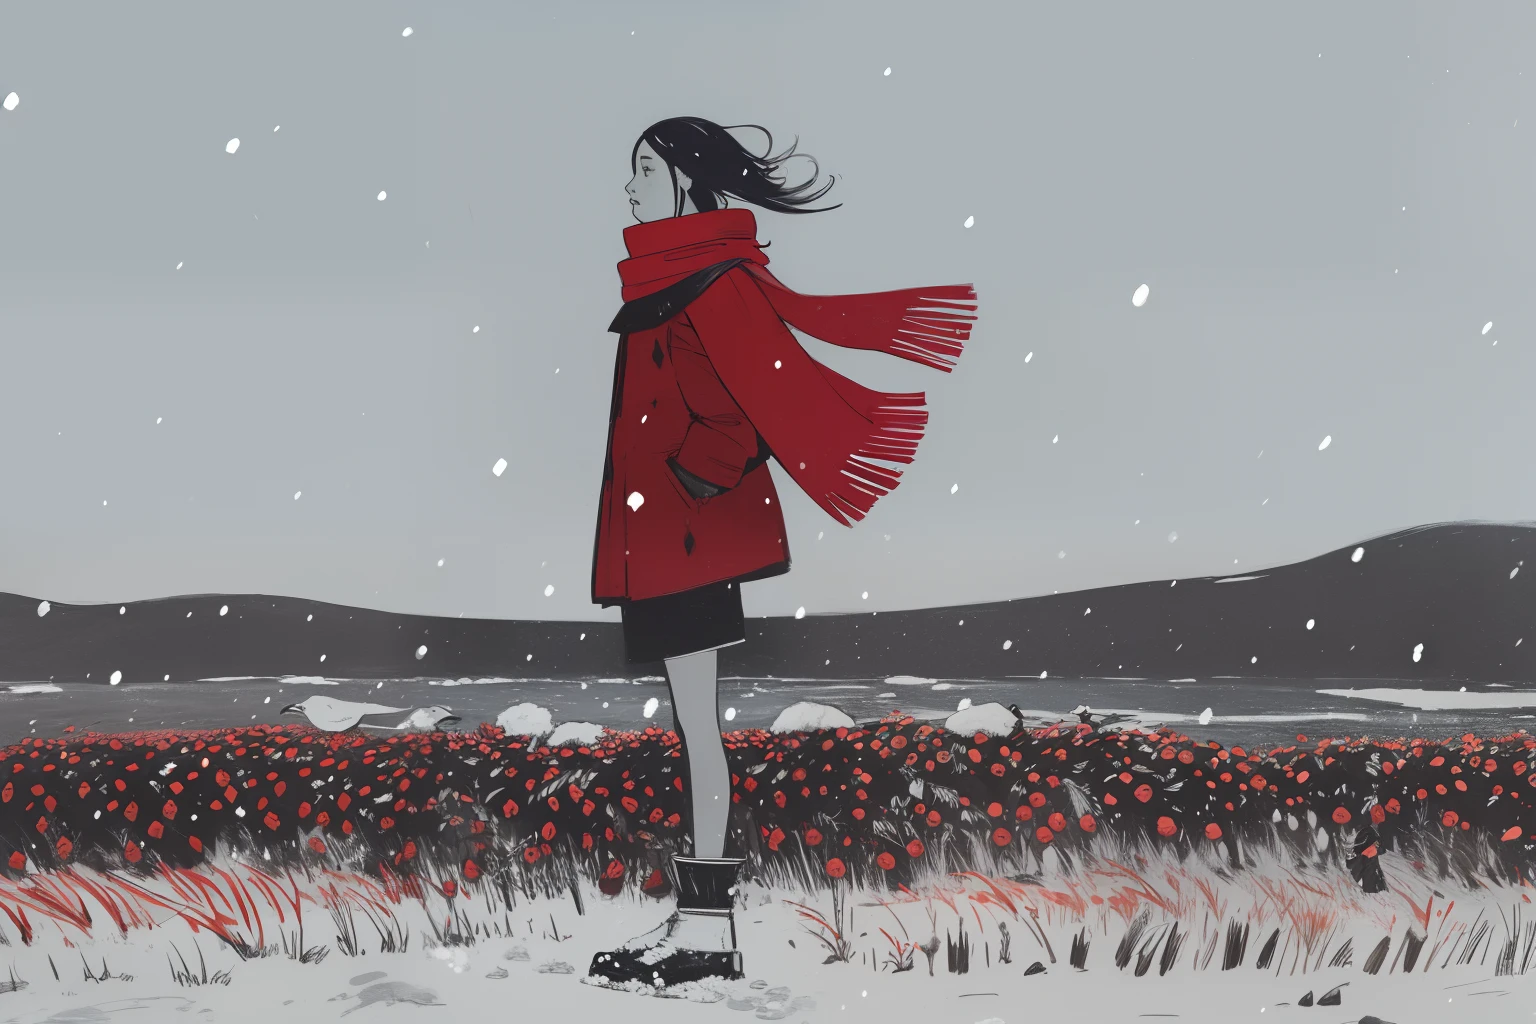 (部族の, エスニック, 先住民イヌイット), 1人の女の子, red scarf on 風, 立っている, 冬, 吹雪, 風, 豪雪, ツンドラ, 湿地, 赤いベリー, グレー, 白, 暗い, 夜, 空に浮かぶ巨大な鳥,  スケッチ